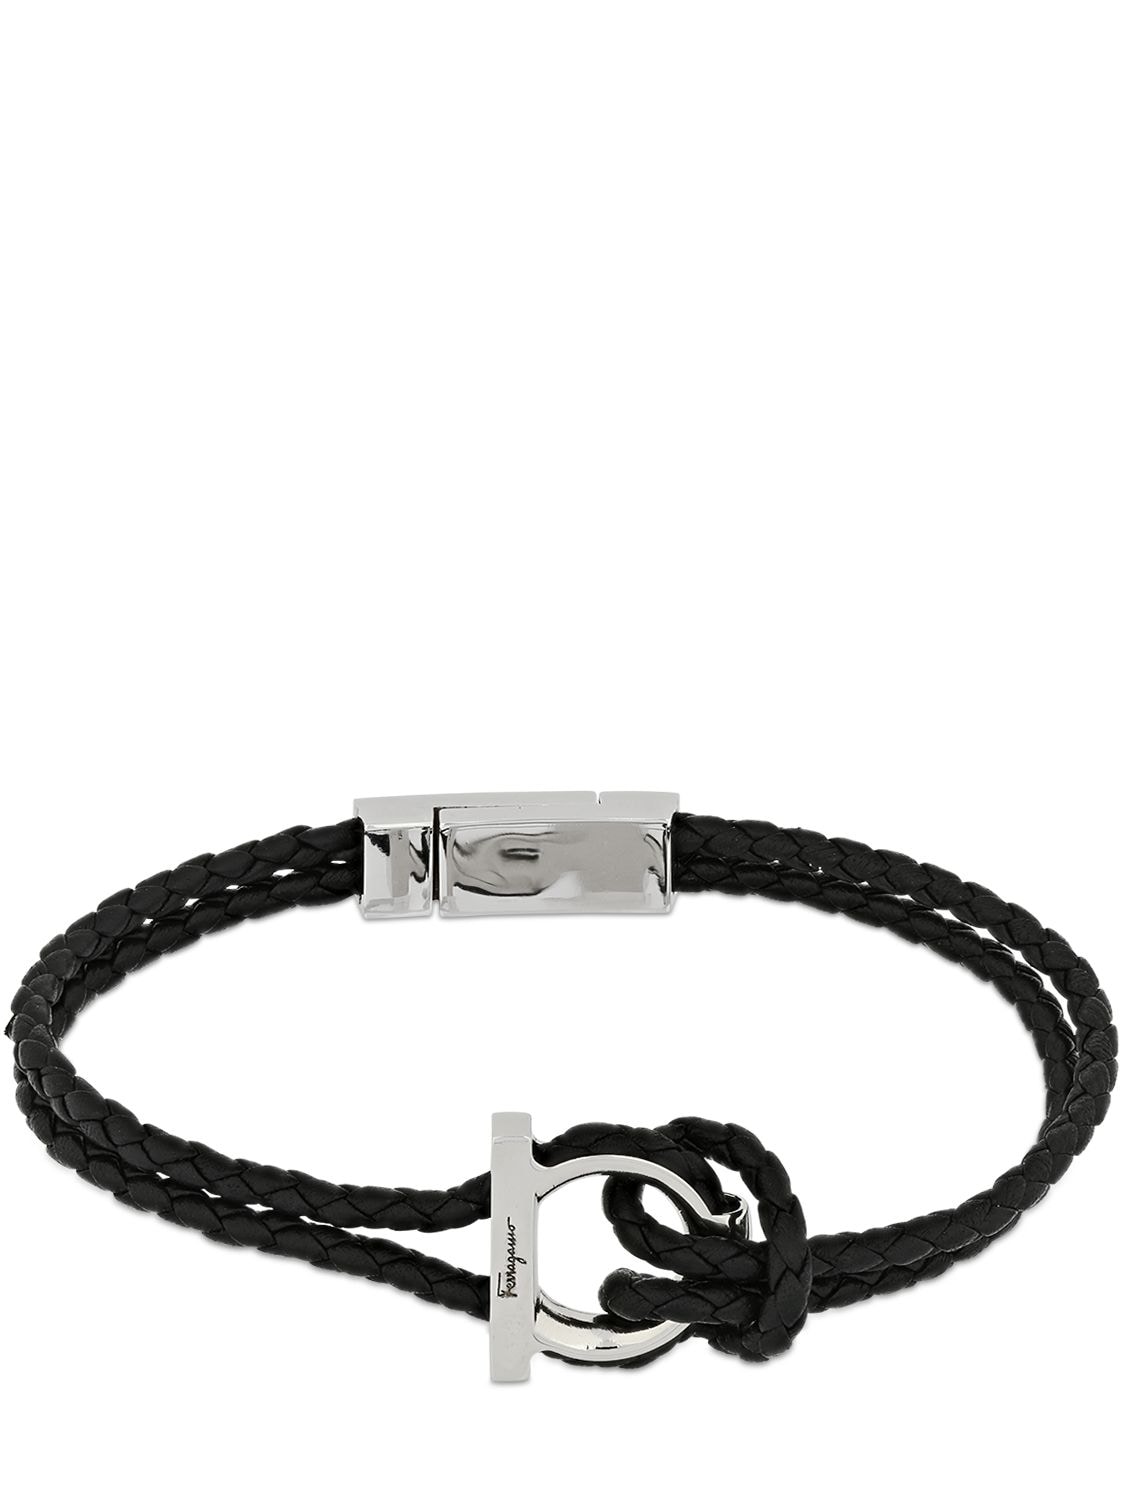 19cm Gancio Braided Leather Bracelet